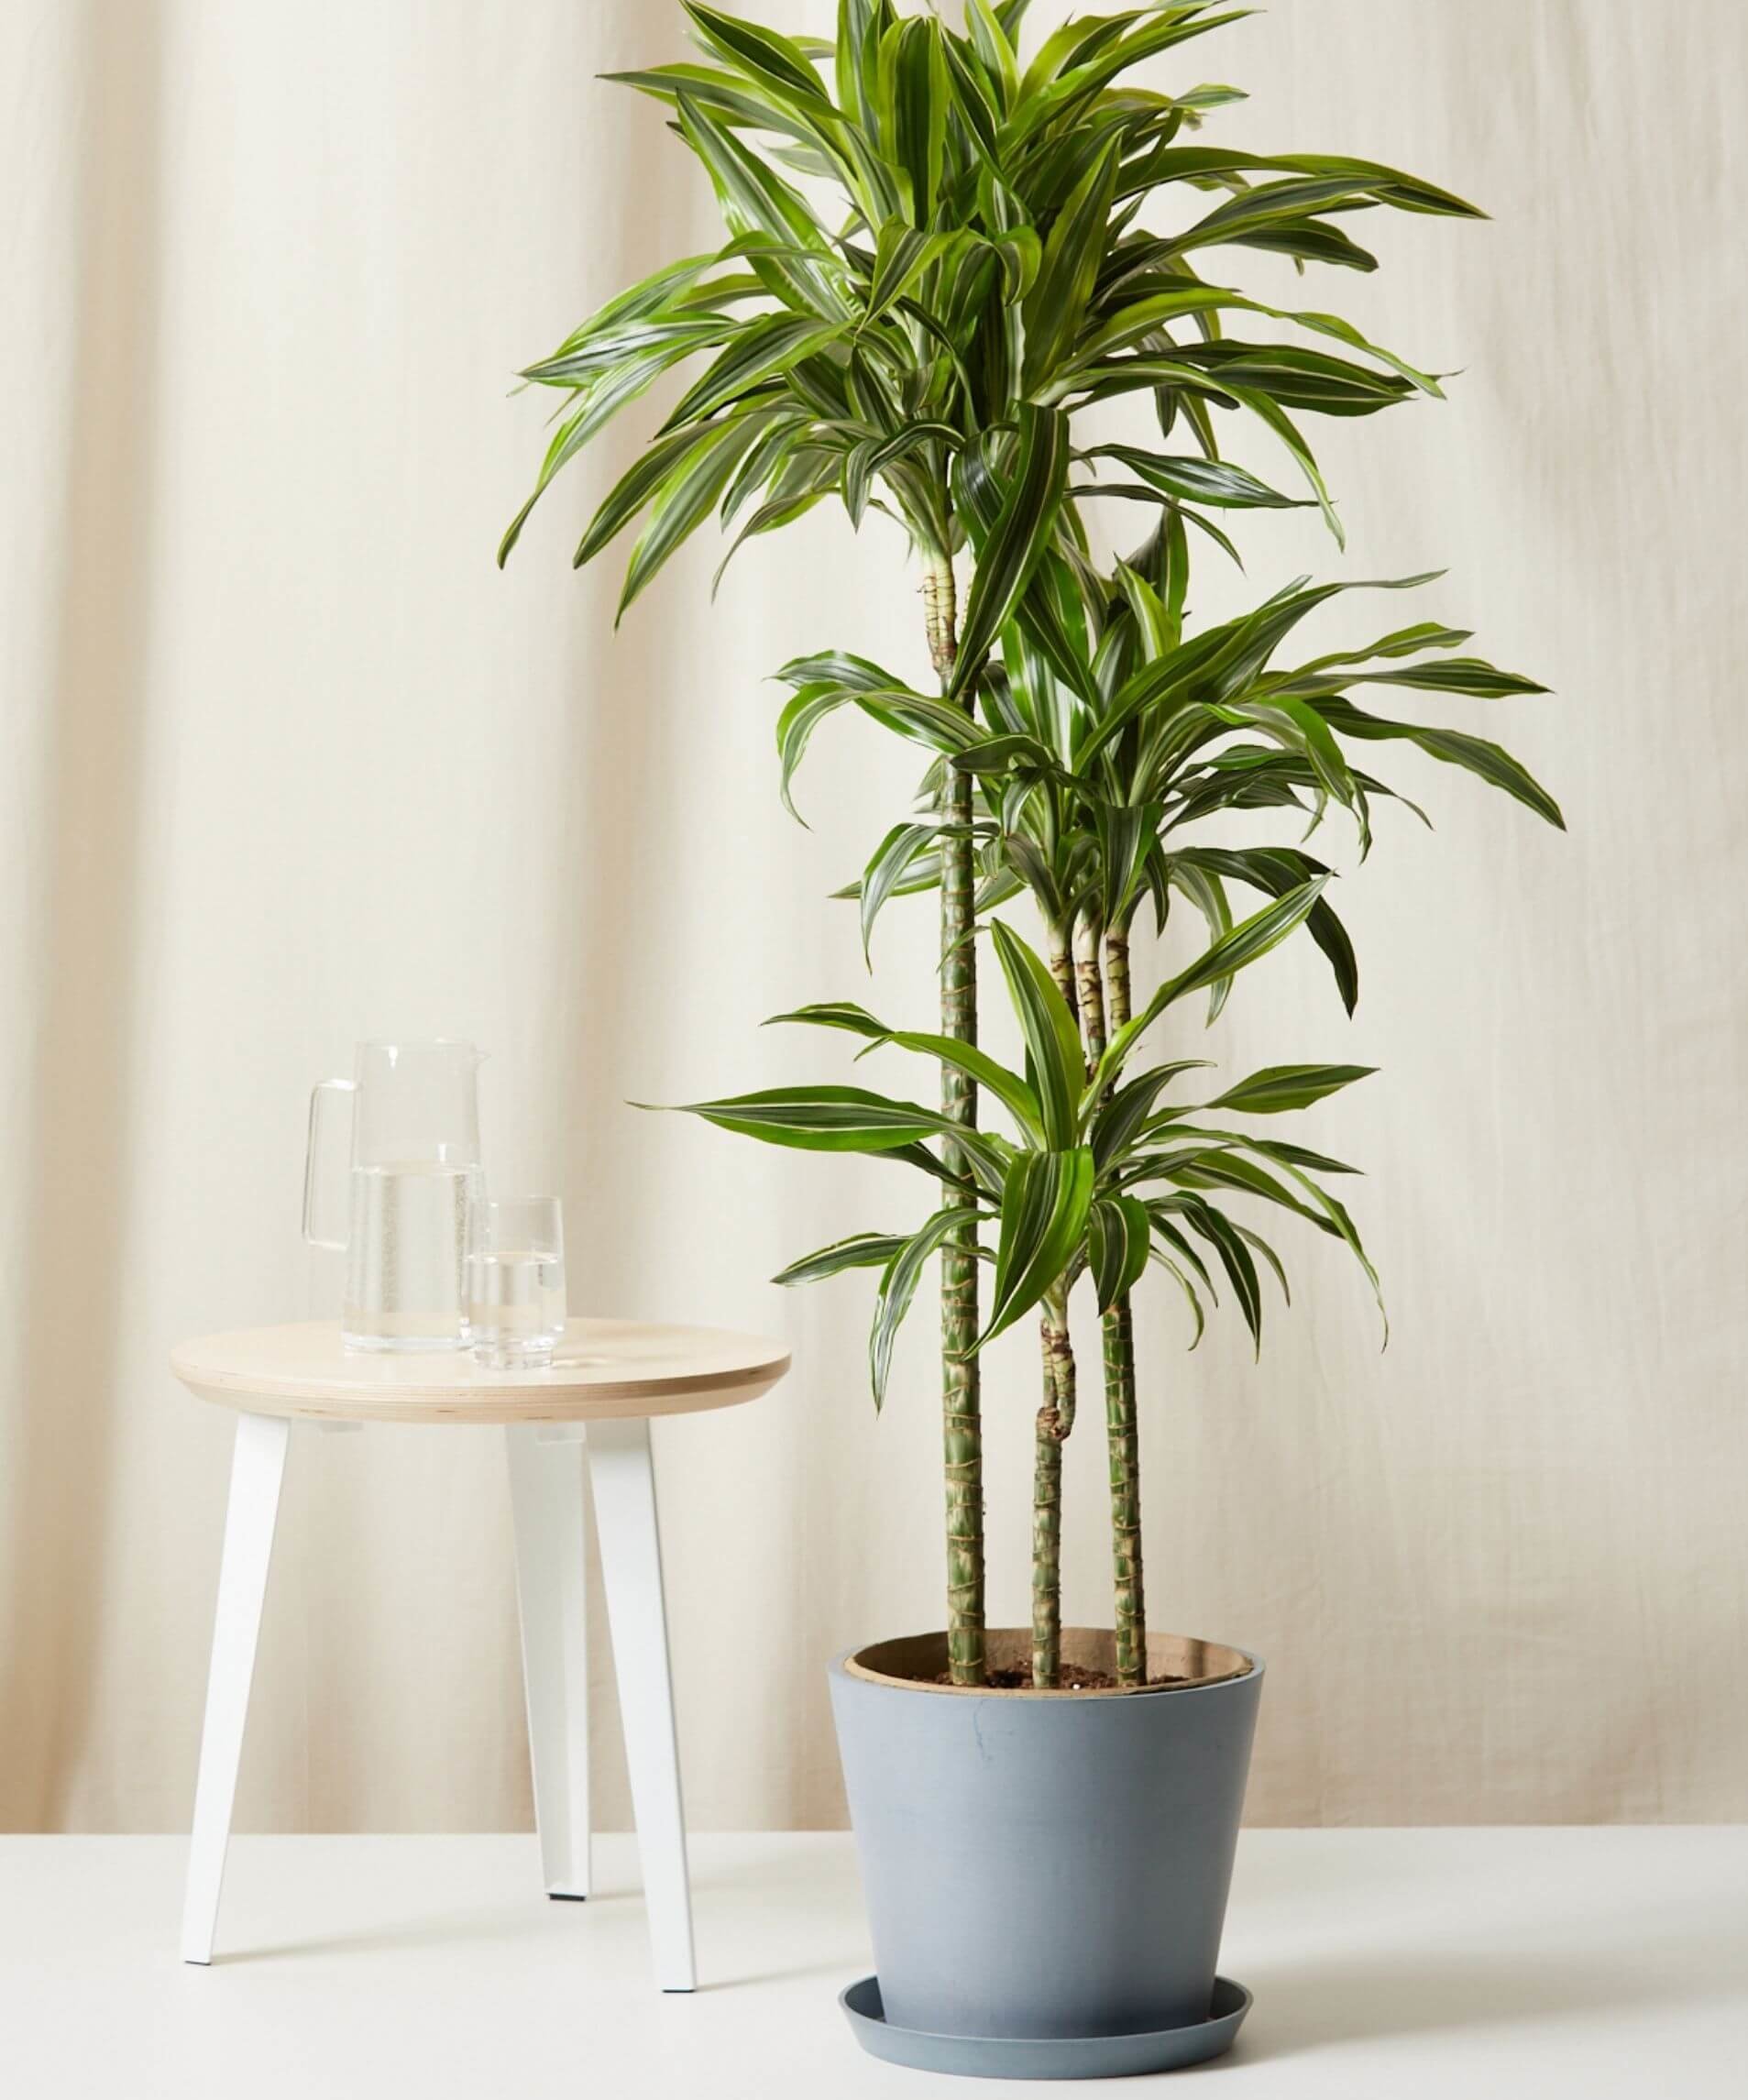 Dracena plant indoor care